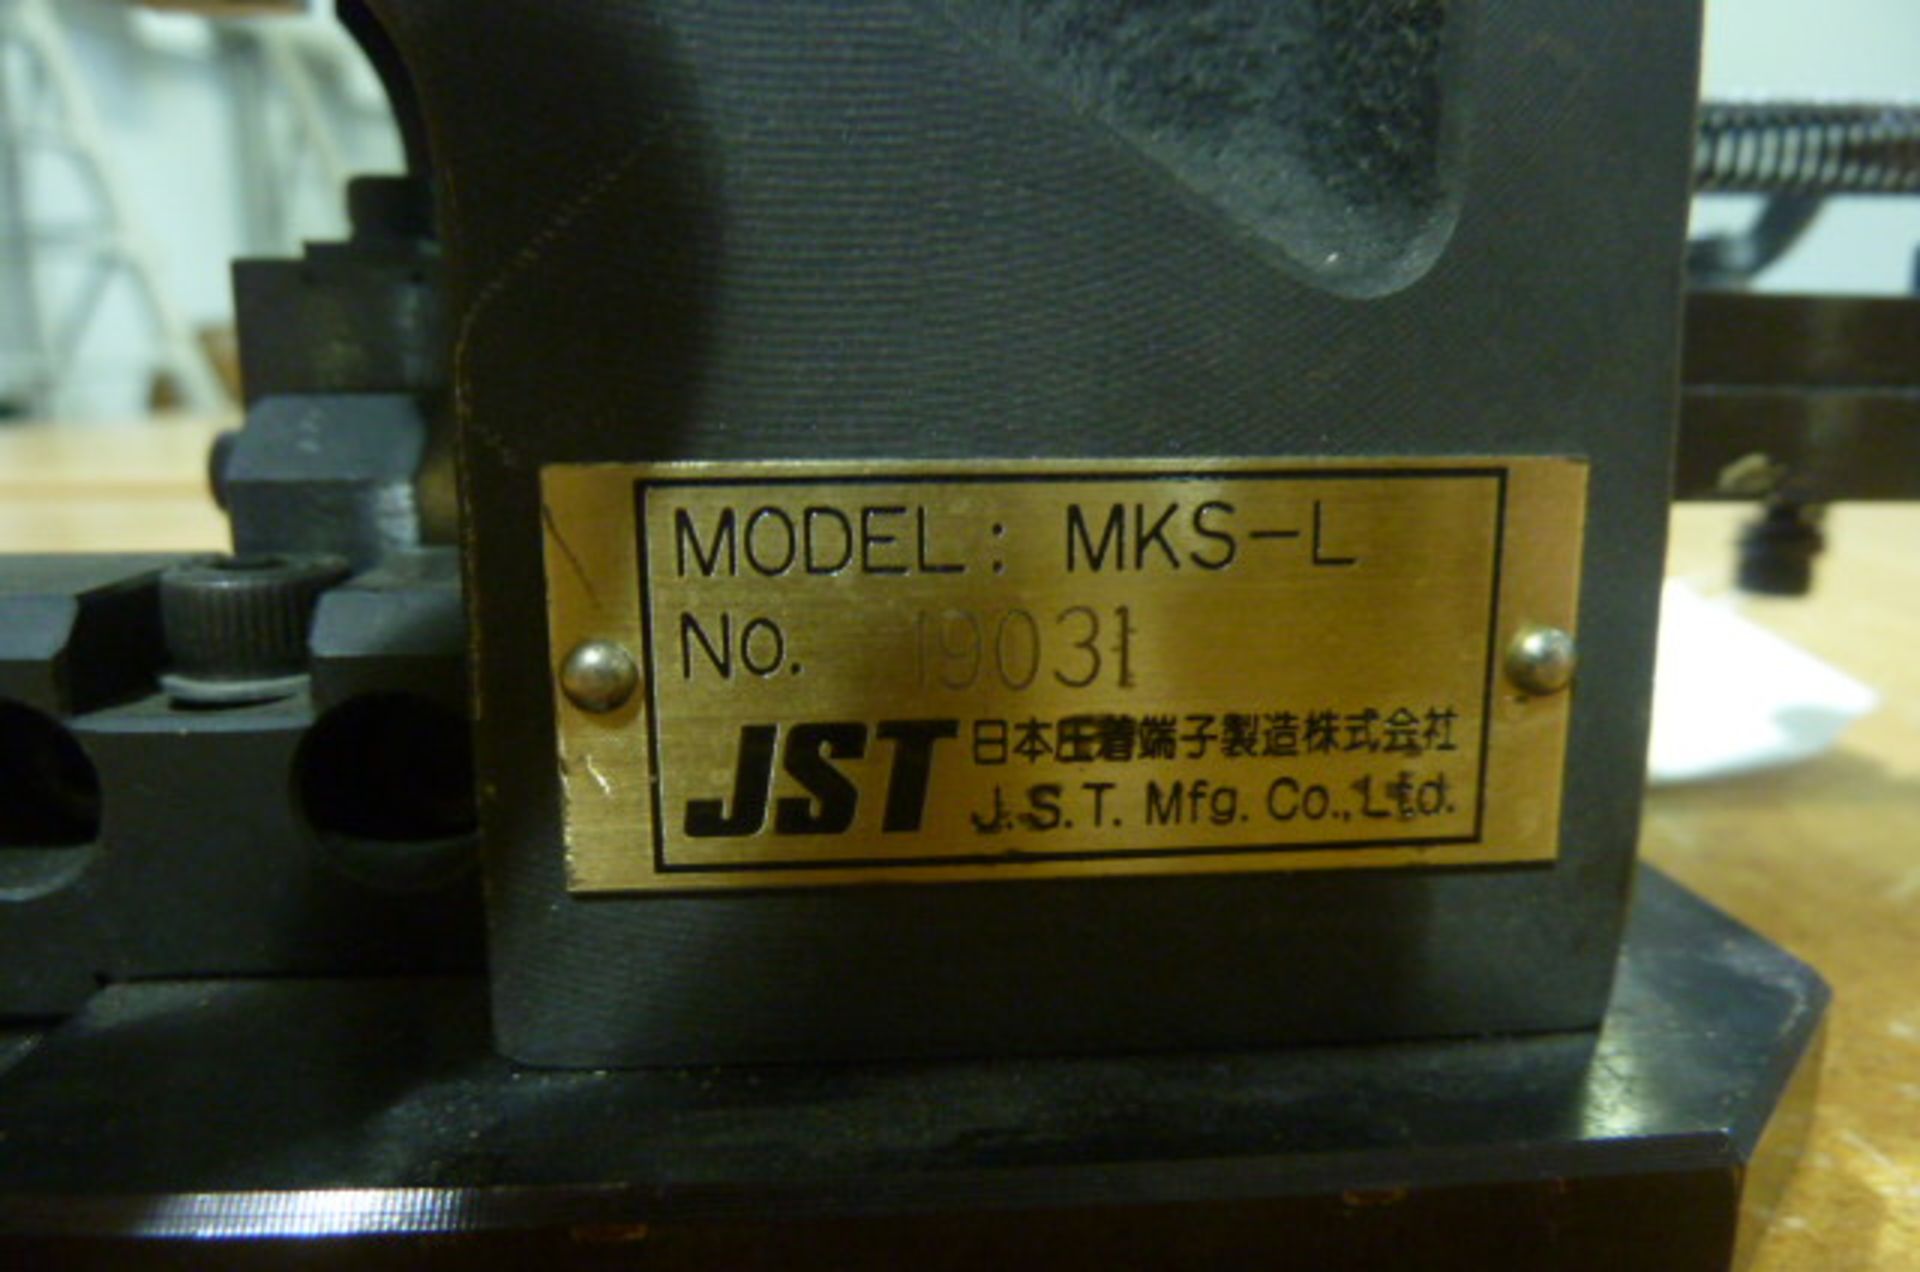 Applicator JST Md. MKS-L 19031 - Image 3 of 3